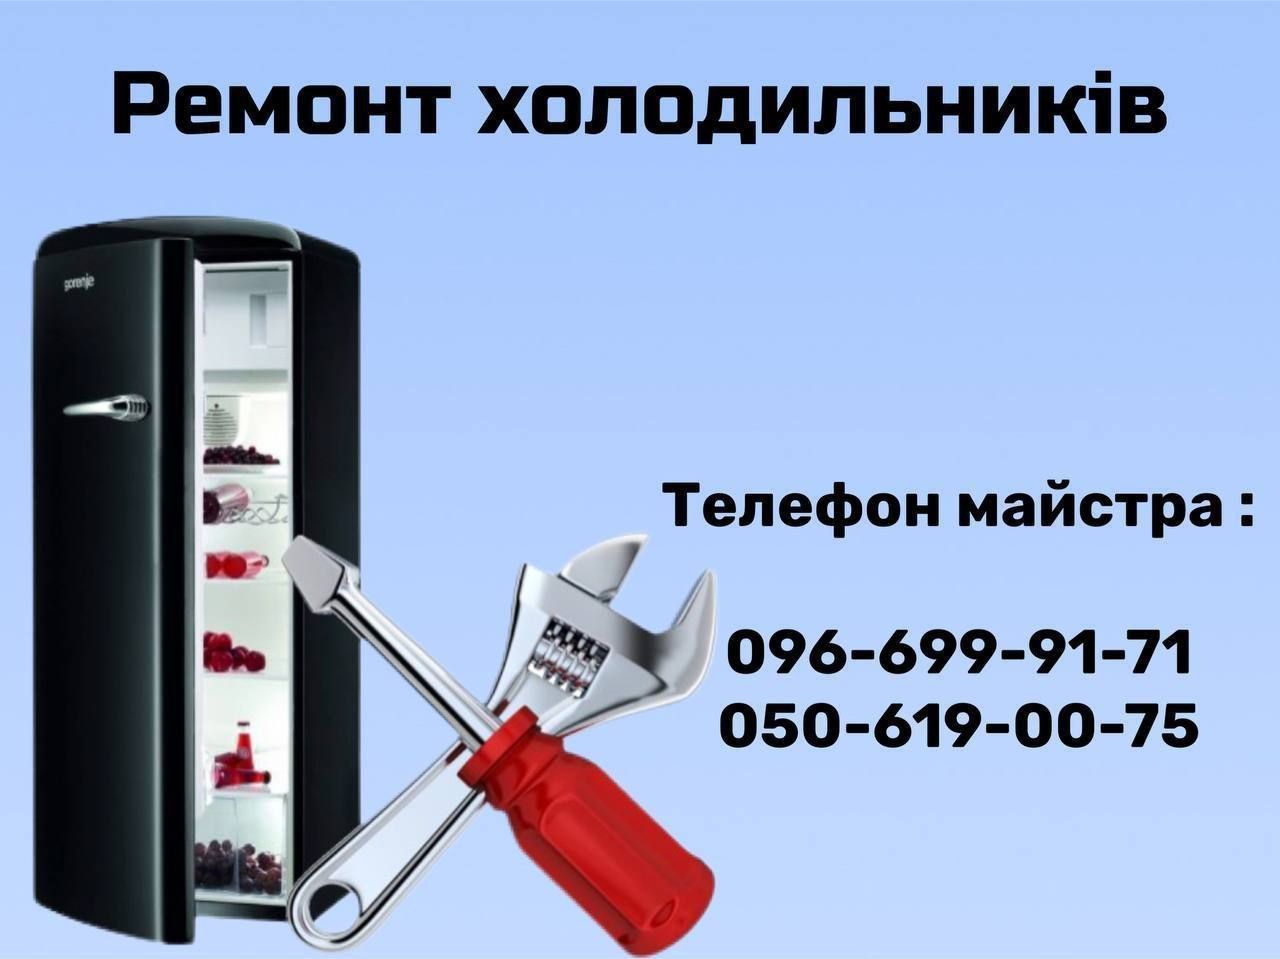 Срочный ремонт холодильников Киев.